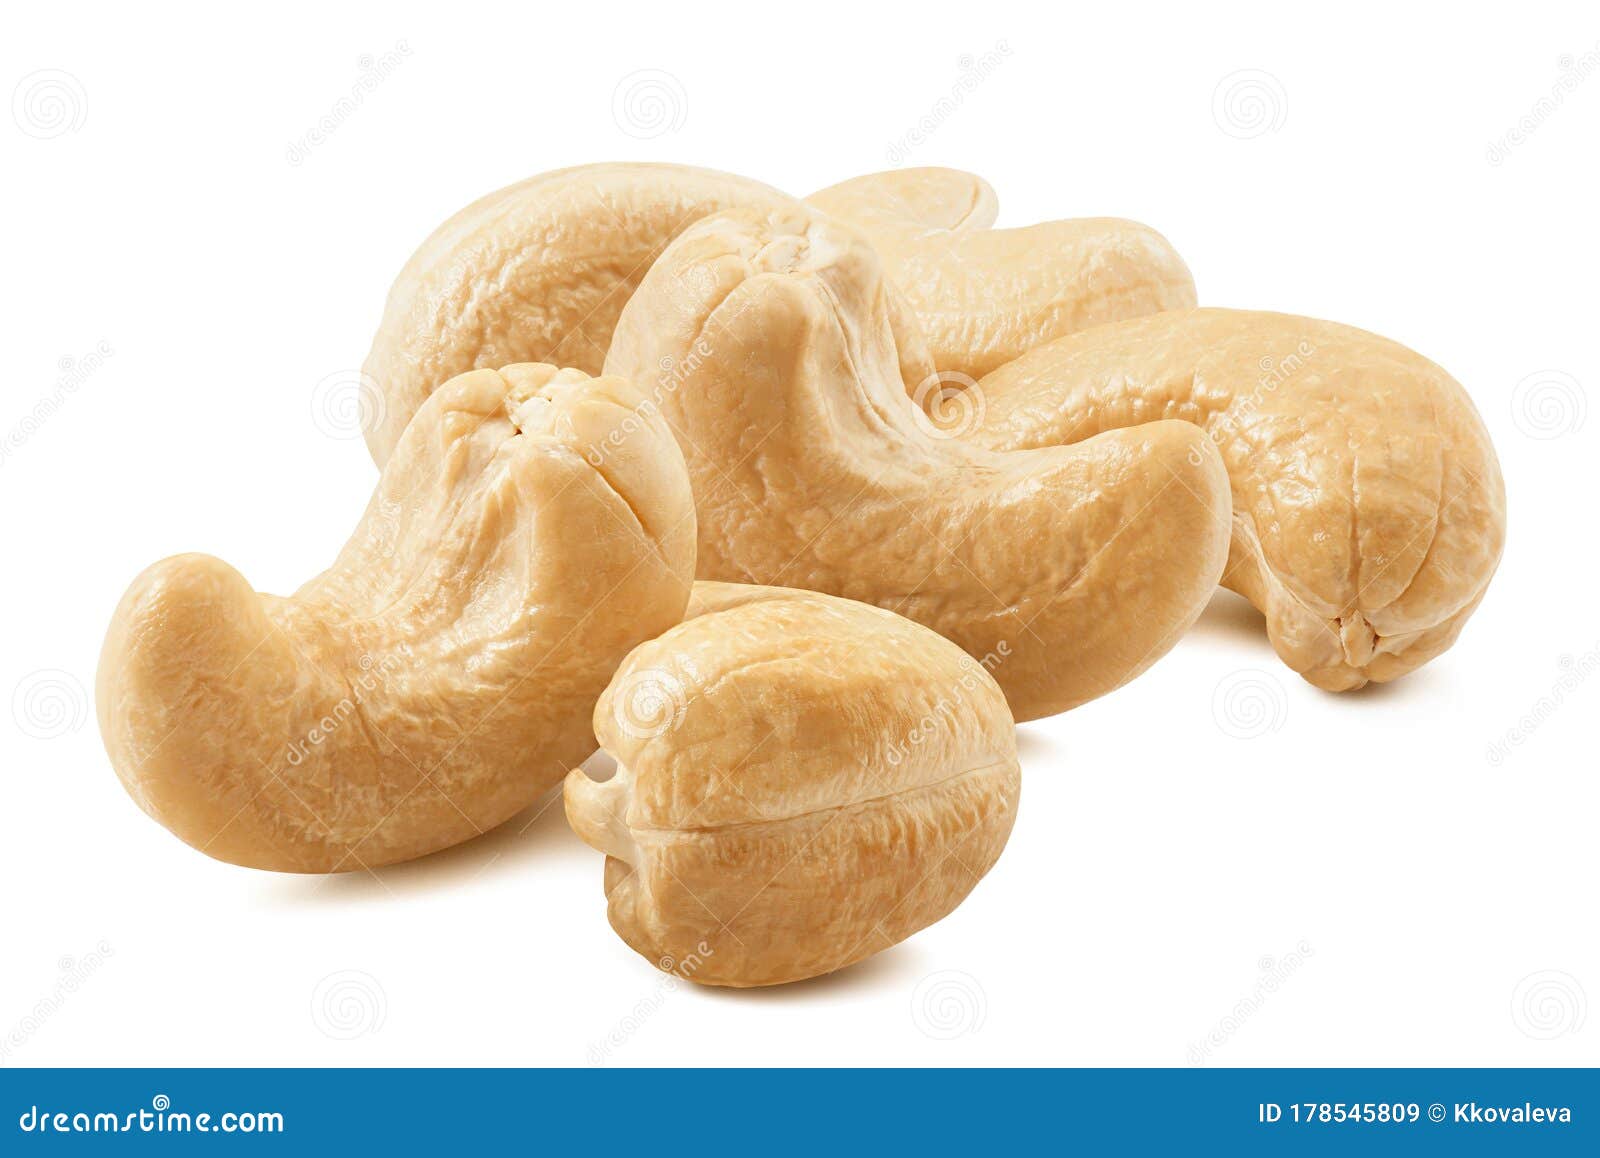 cashew nut group  on white background